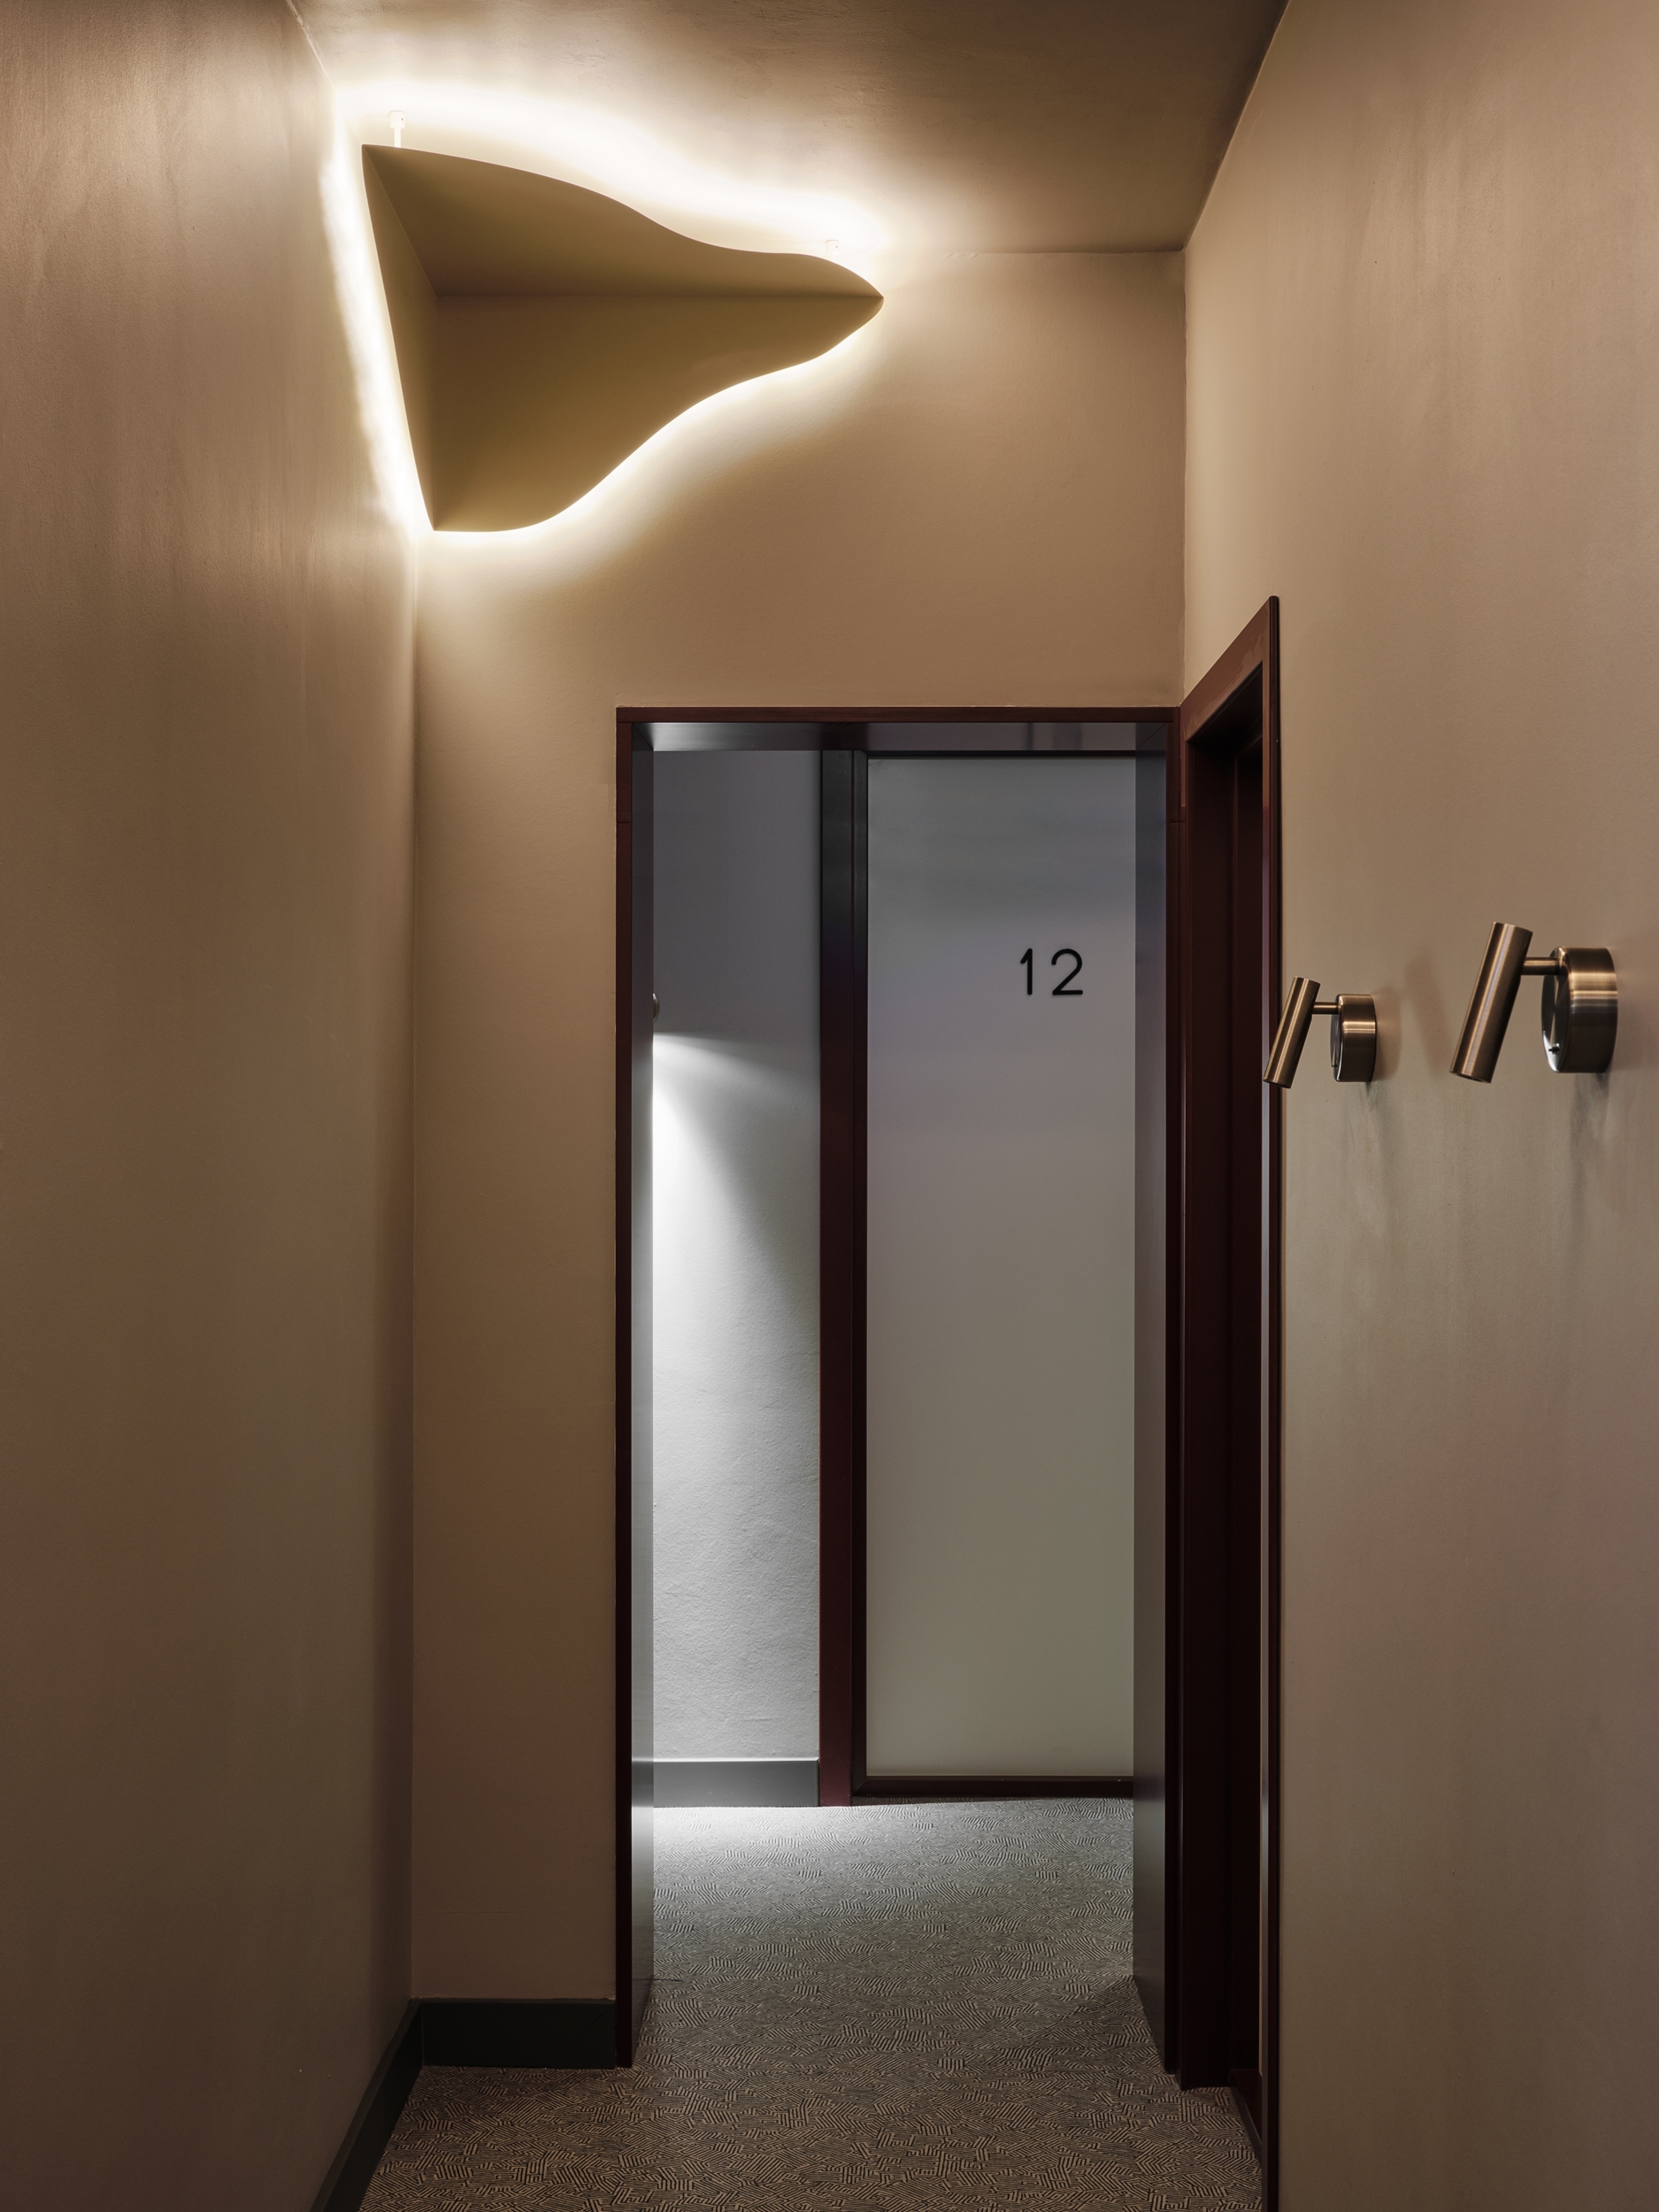 卡累林酒店|ART-Arrakis | 建筑室内设计的创新与灵感